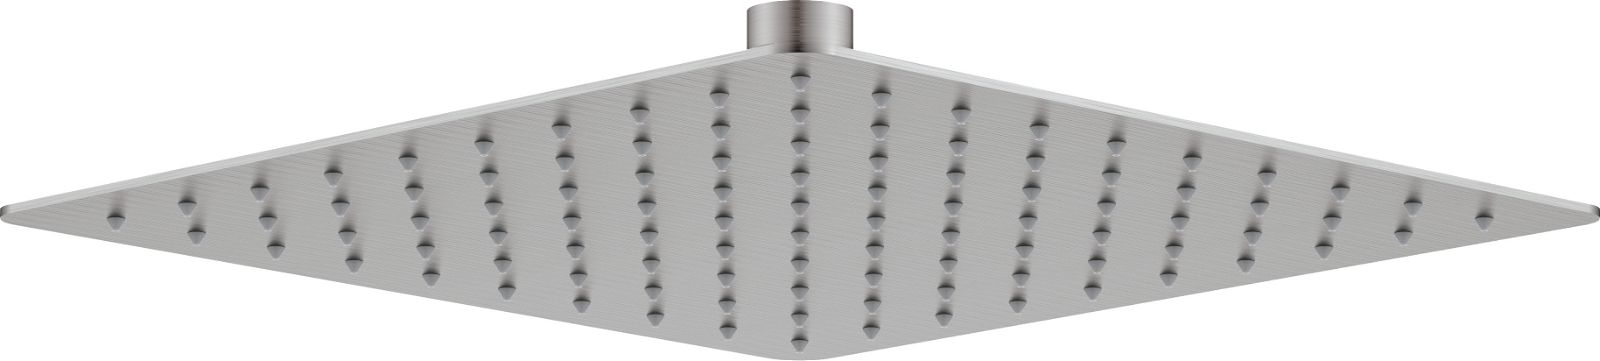 Shower head, steel - 250x250 mm - NAC_F02K - Główne zdjęcie produktowe